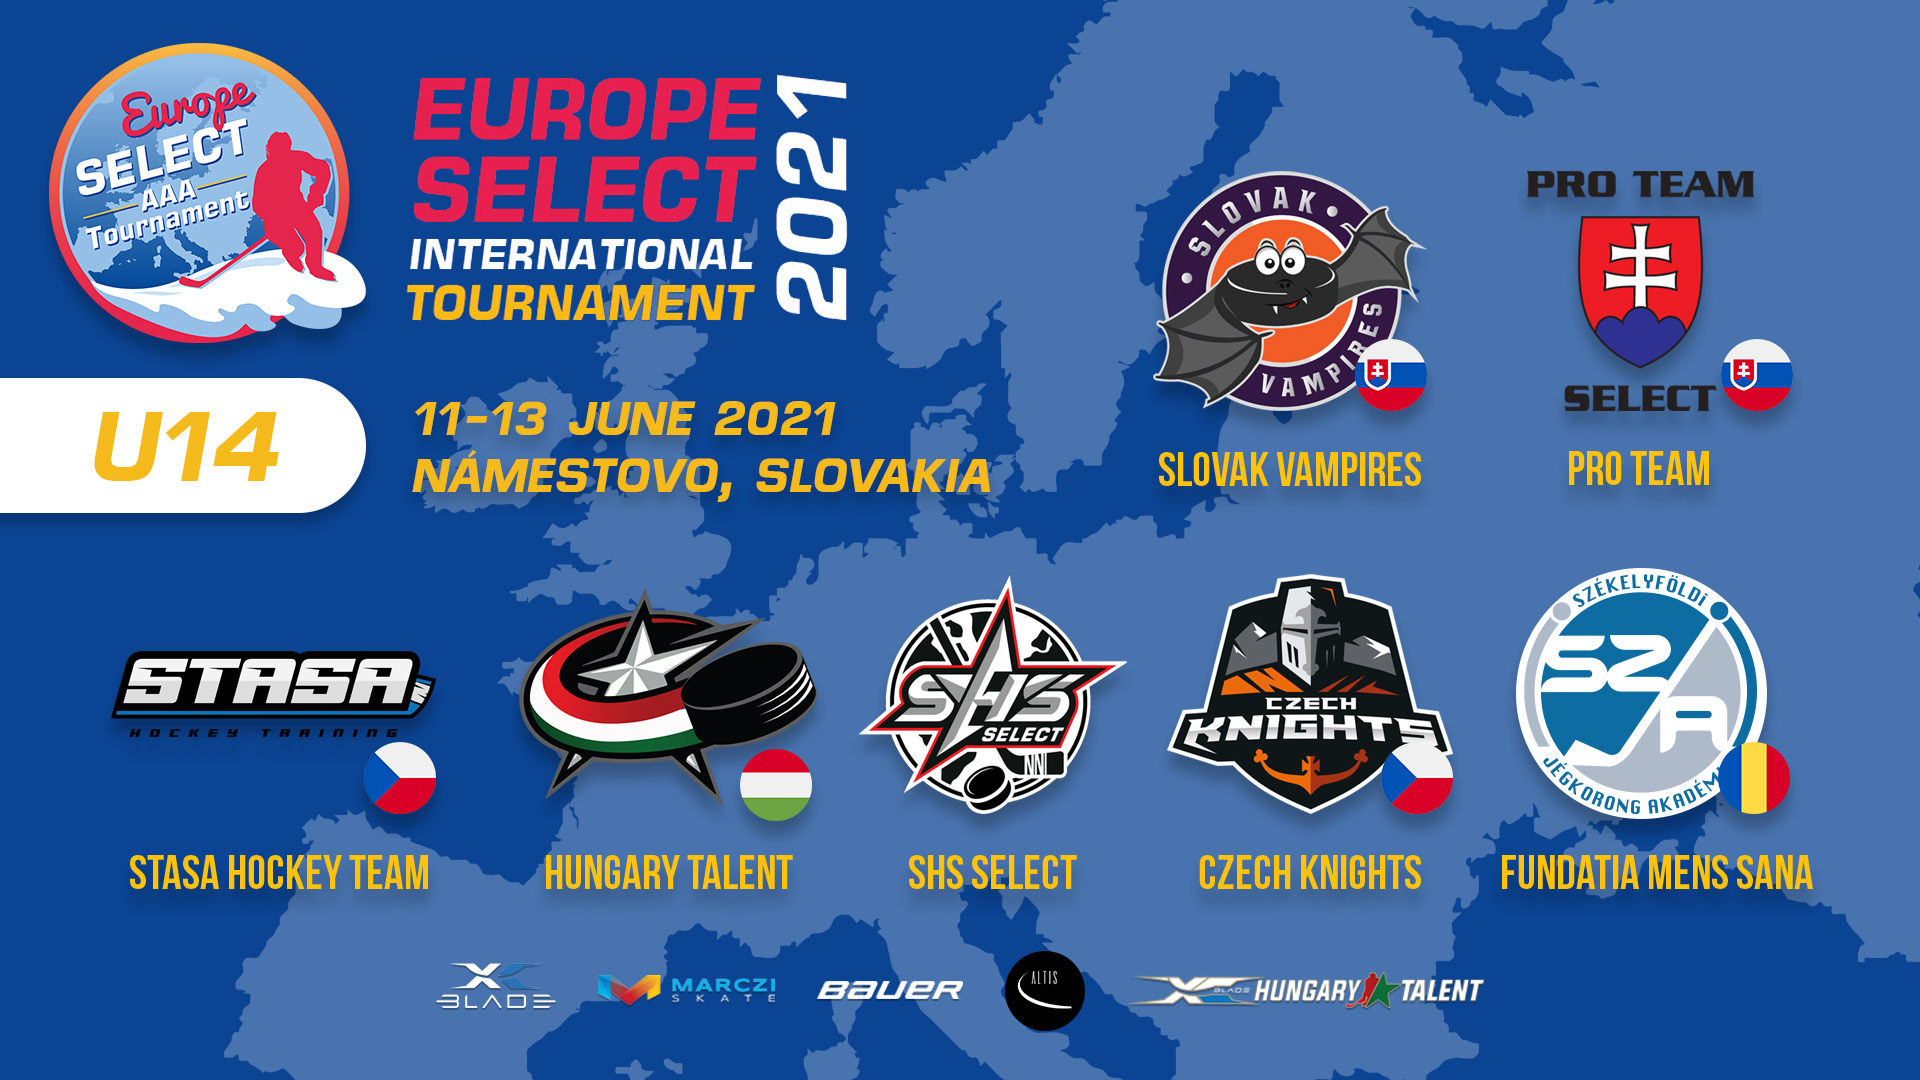 U14 Europe Select Tournament in June